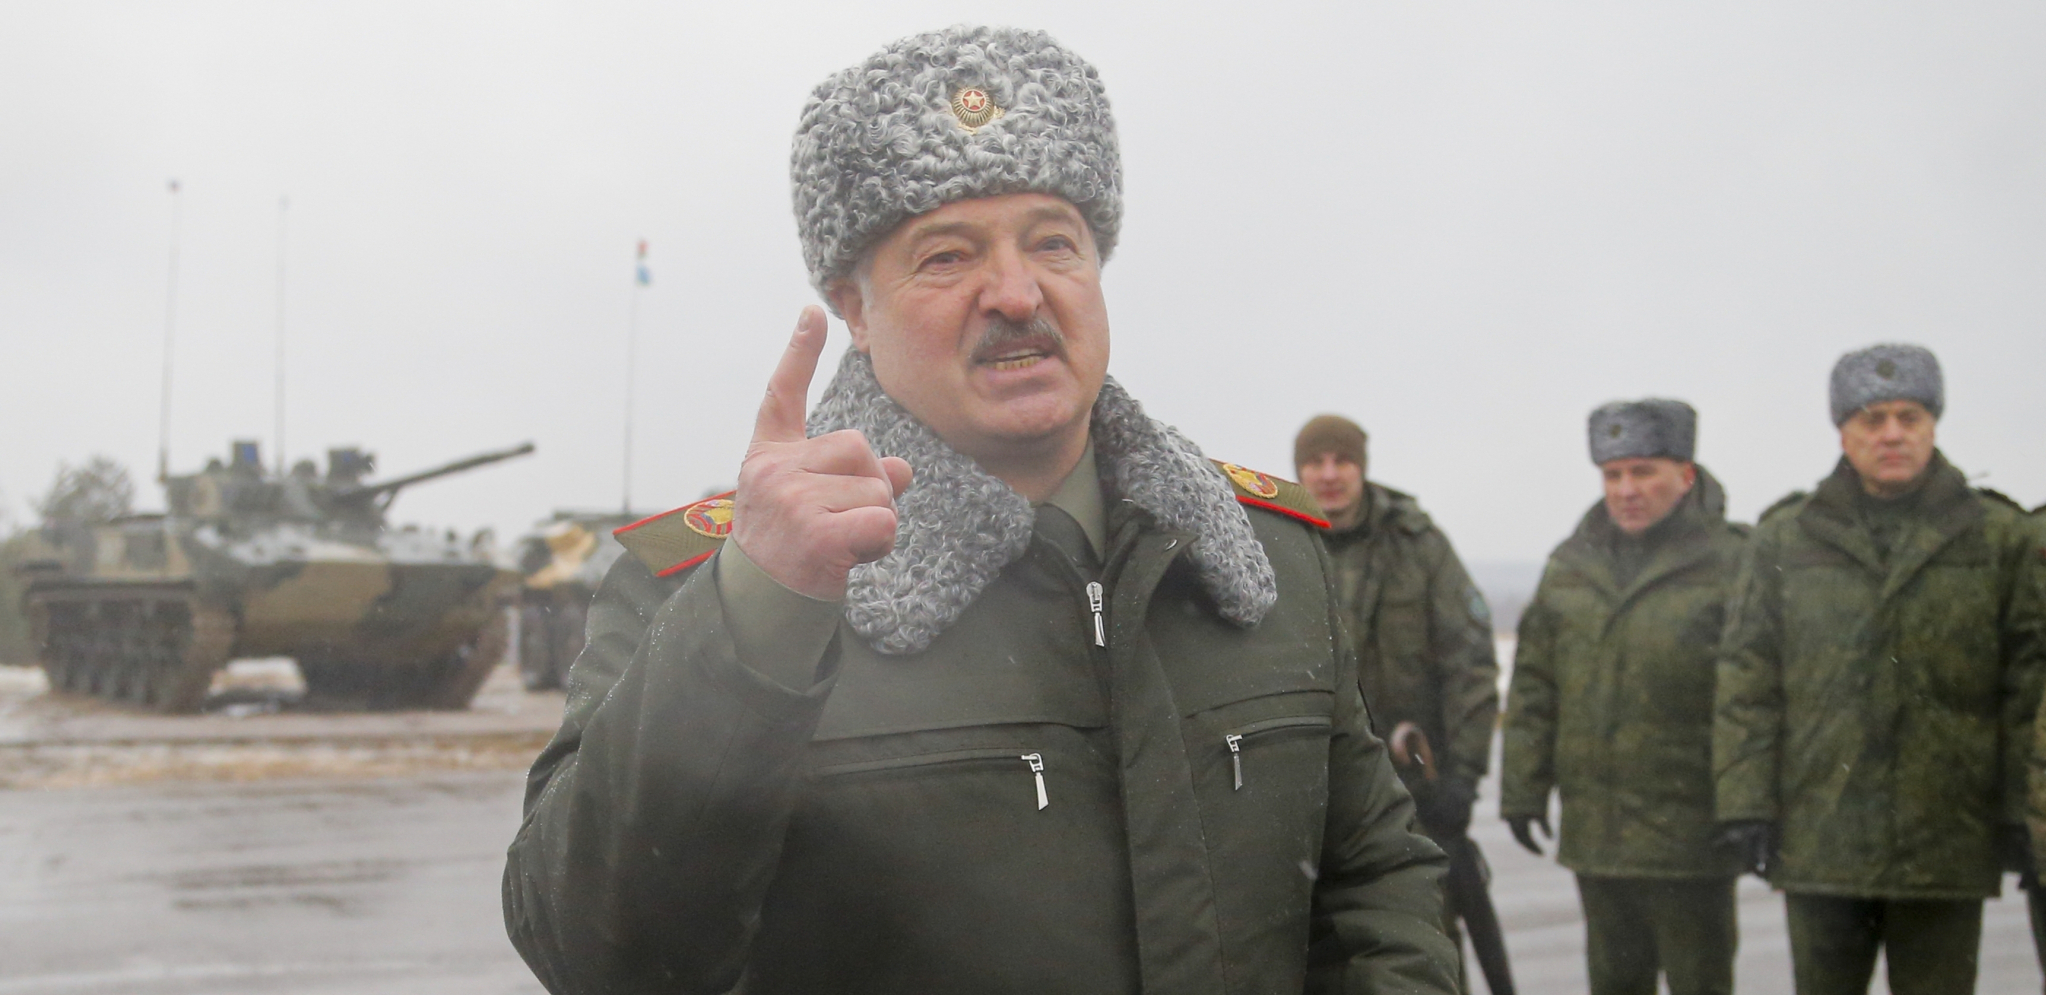 "DUH OPŠTENARODNOG OTPORA" Lukašenko: Pošast nacizma se prikrala granicama!